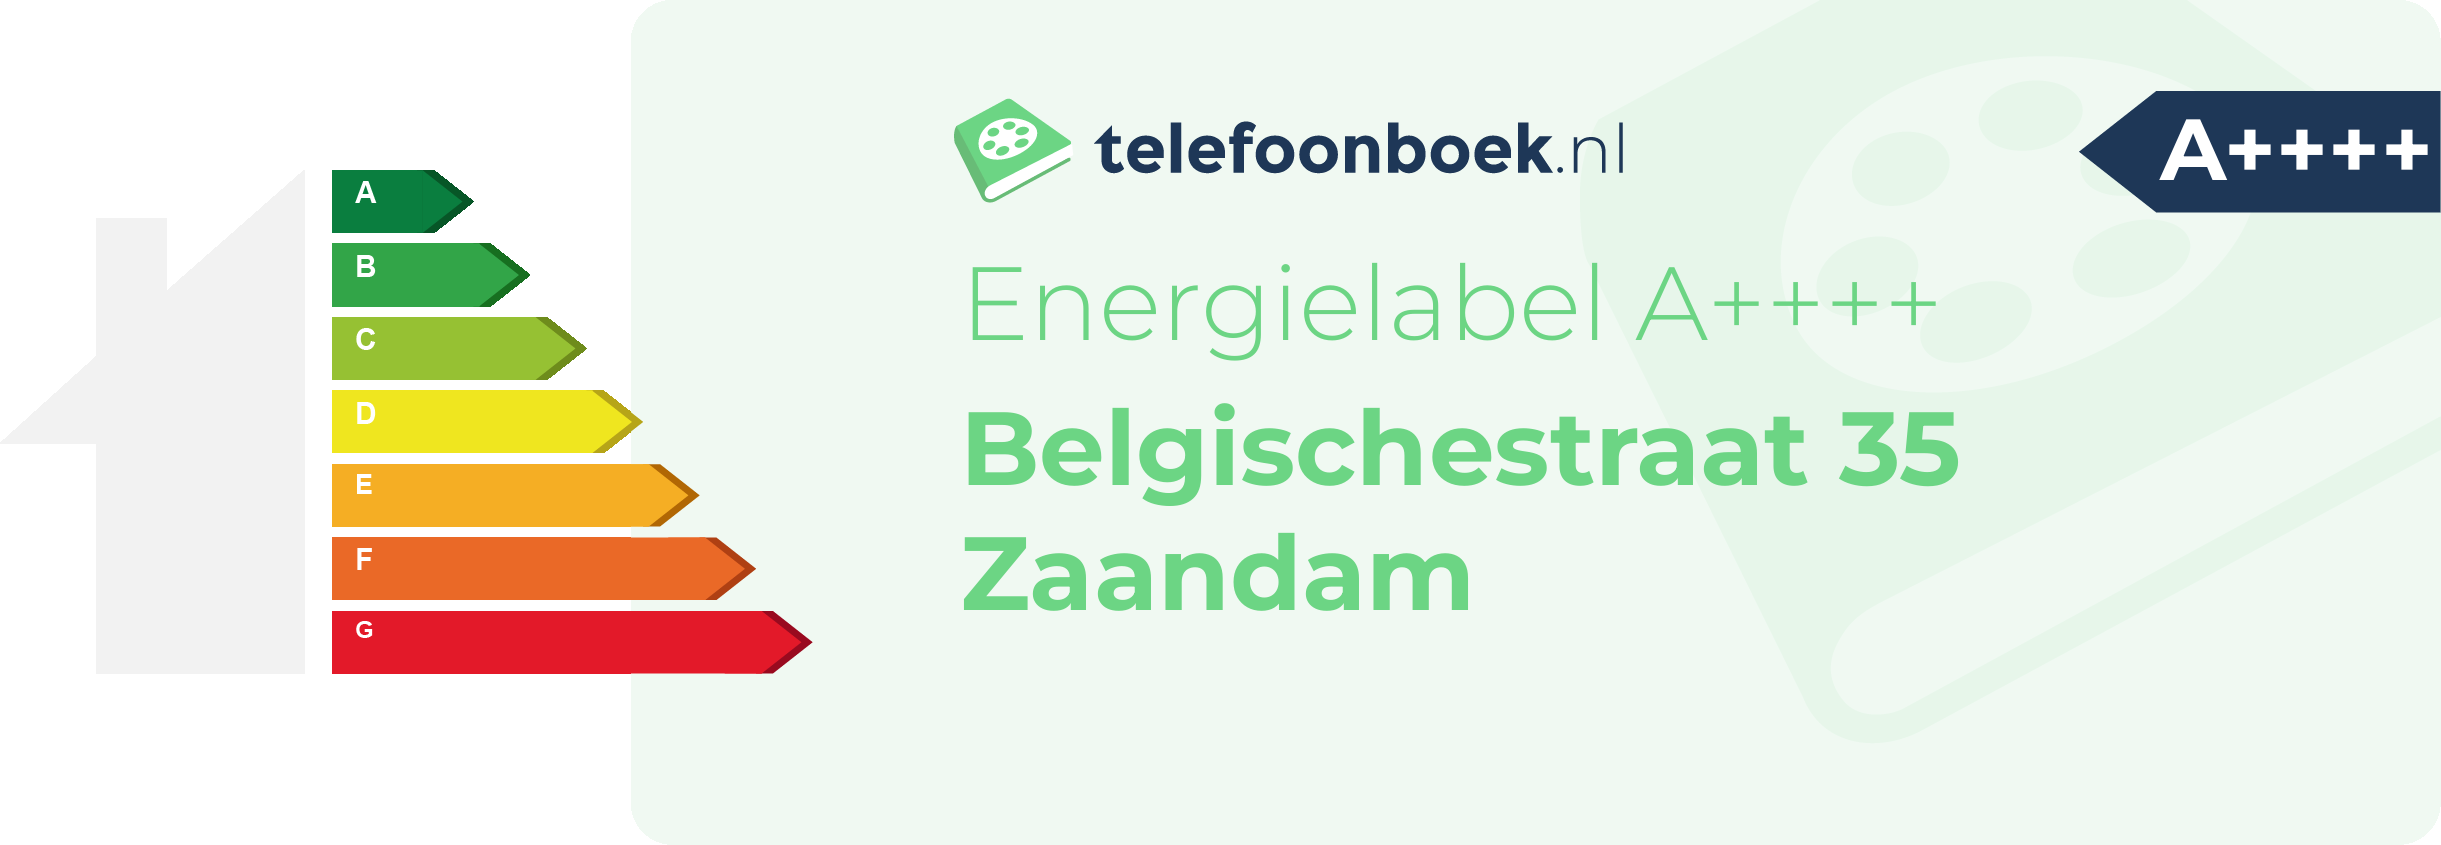 Energielabel Belgischestraat 35 Zaandam